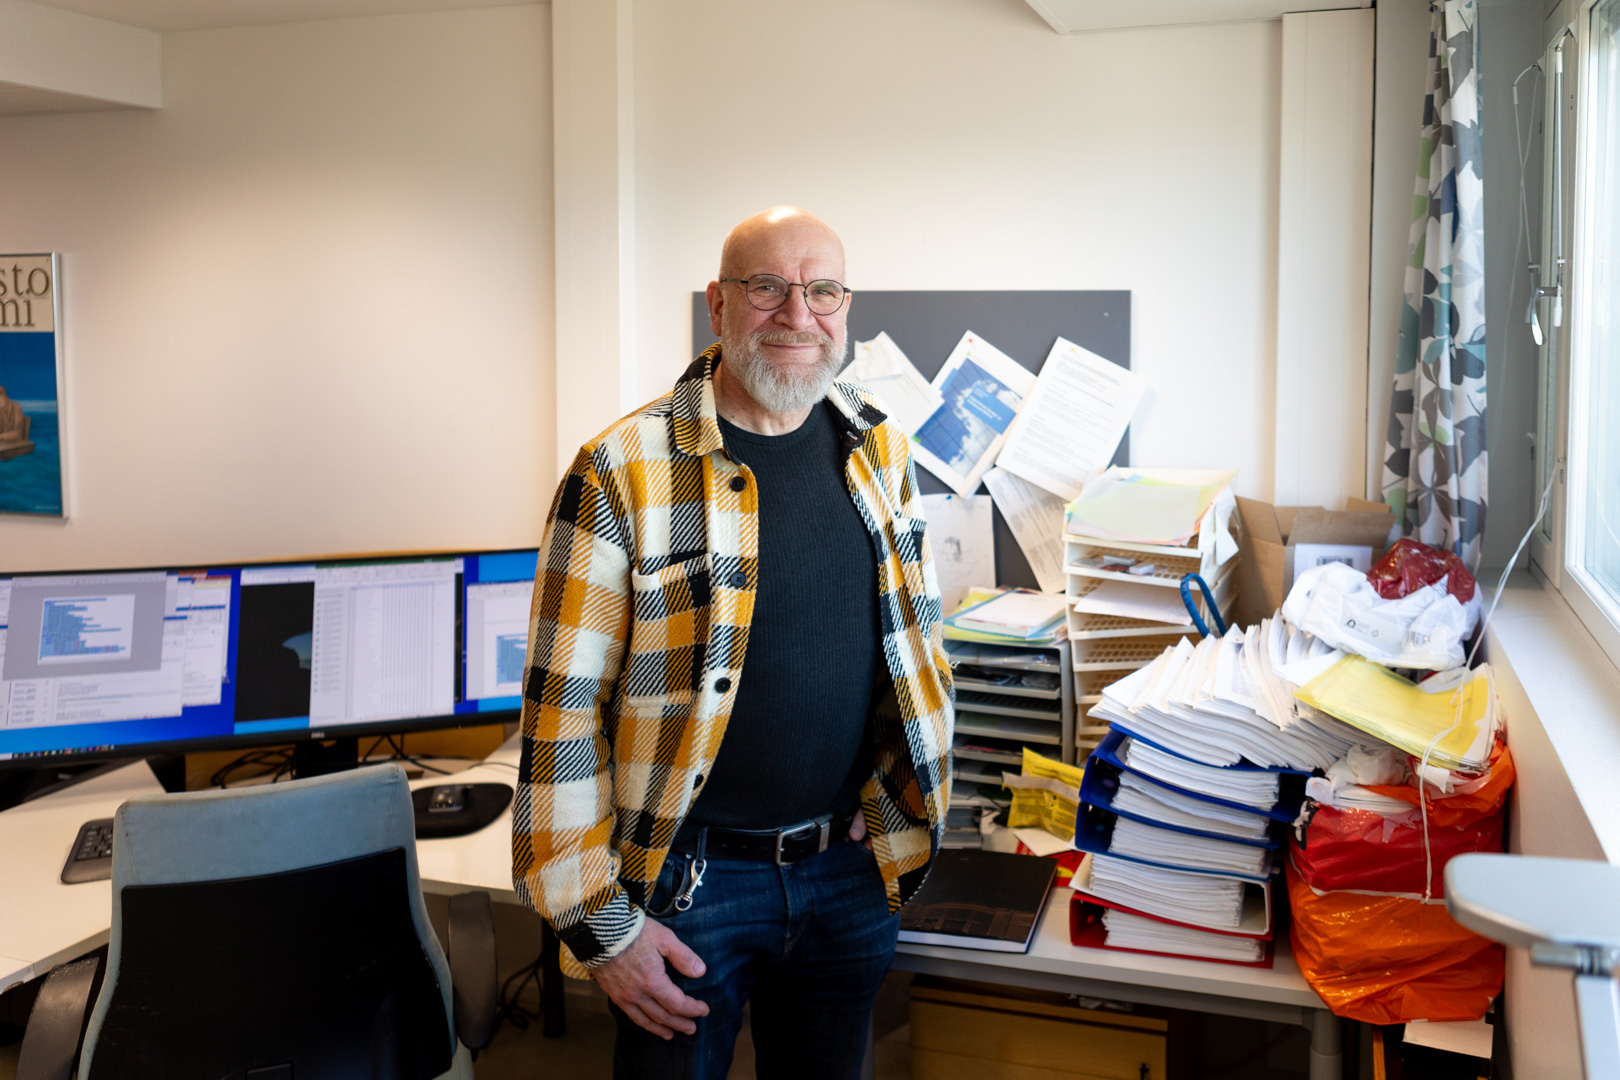 Petri Näätänen seisoo työpöytänsä äärellä, joka tosiaan näyttää siltä että töitä on tehty ja hymyilee. 